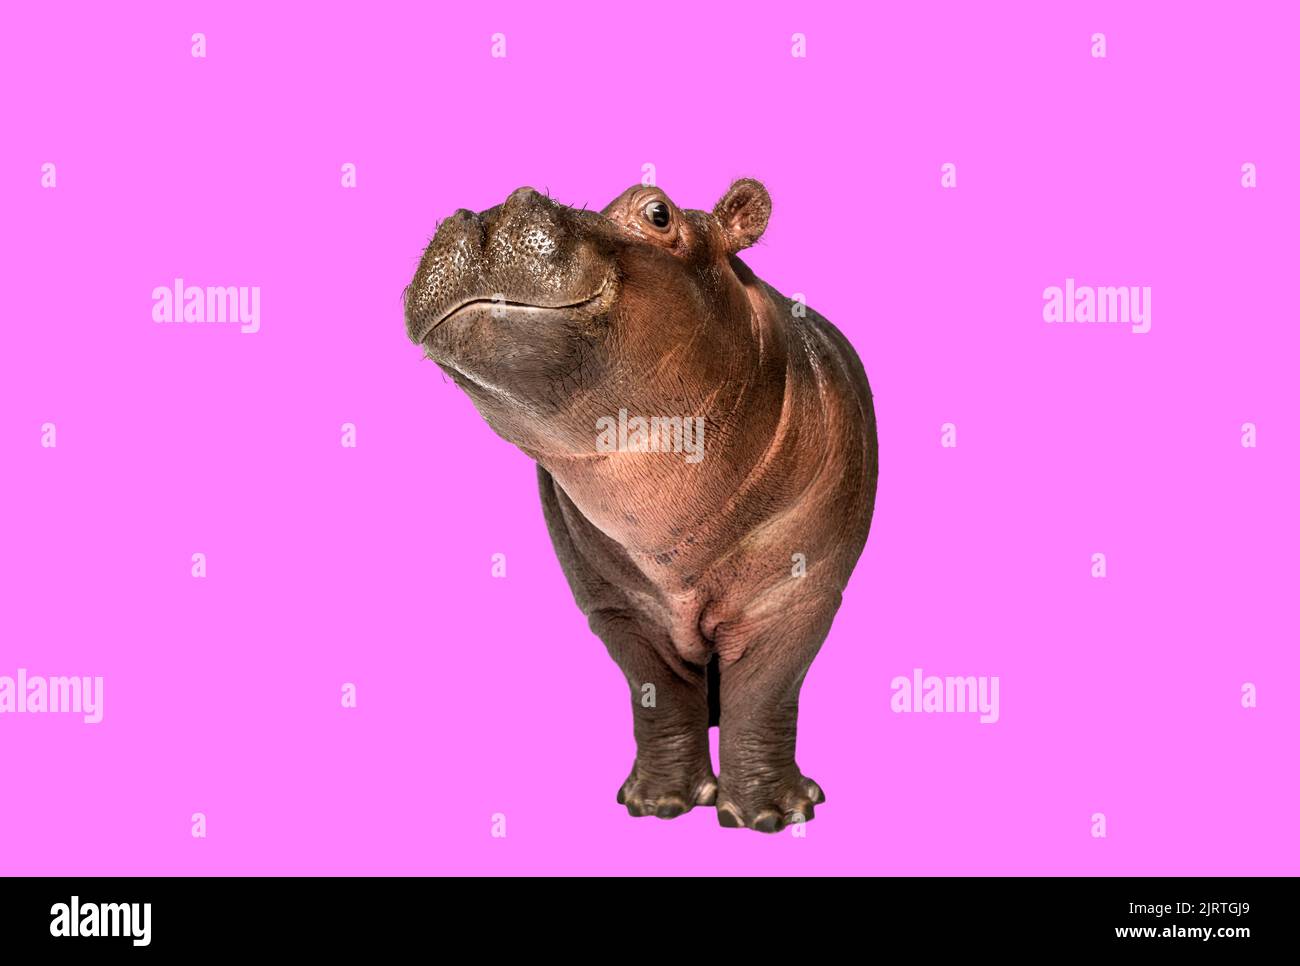 Hipopótamo de pie y mirando a la cámara sobre fondo rosa Foto de stock